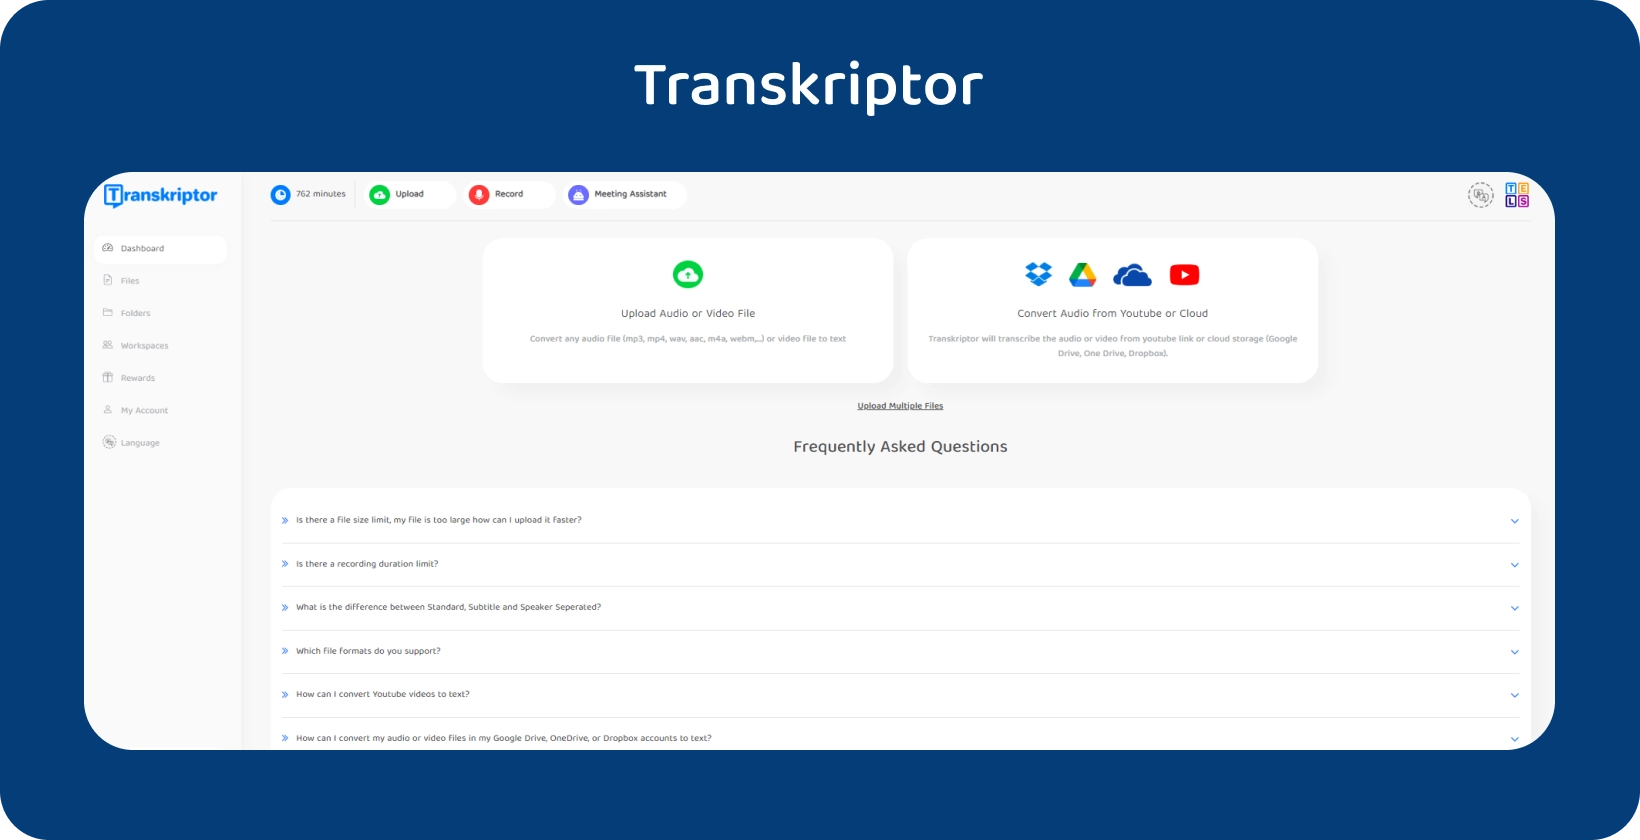 Transkriptor的界面推广其音频到文本转换服务。